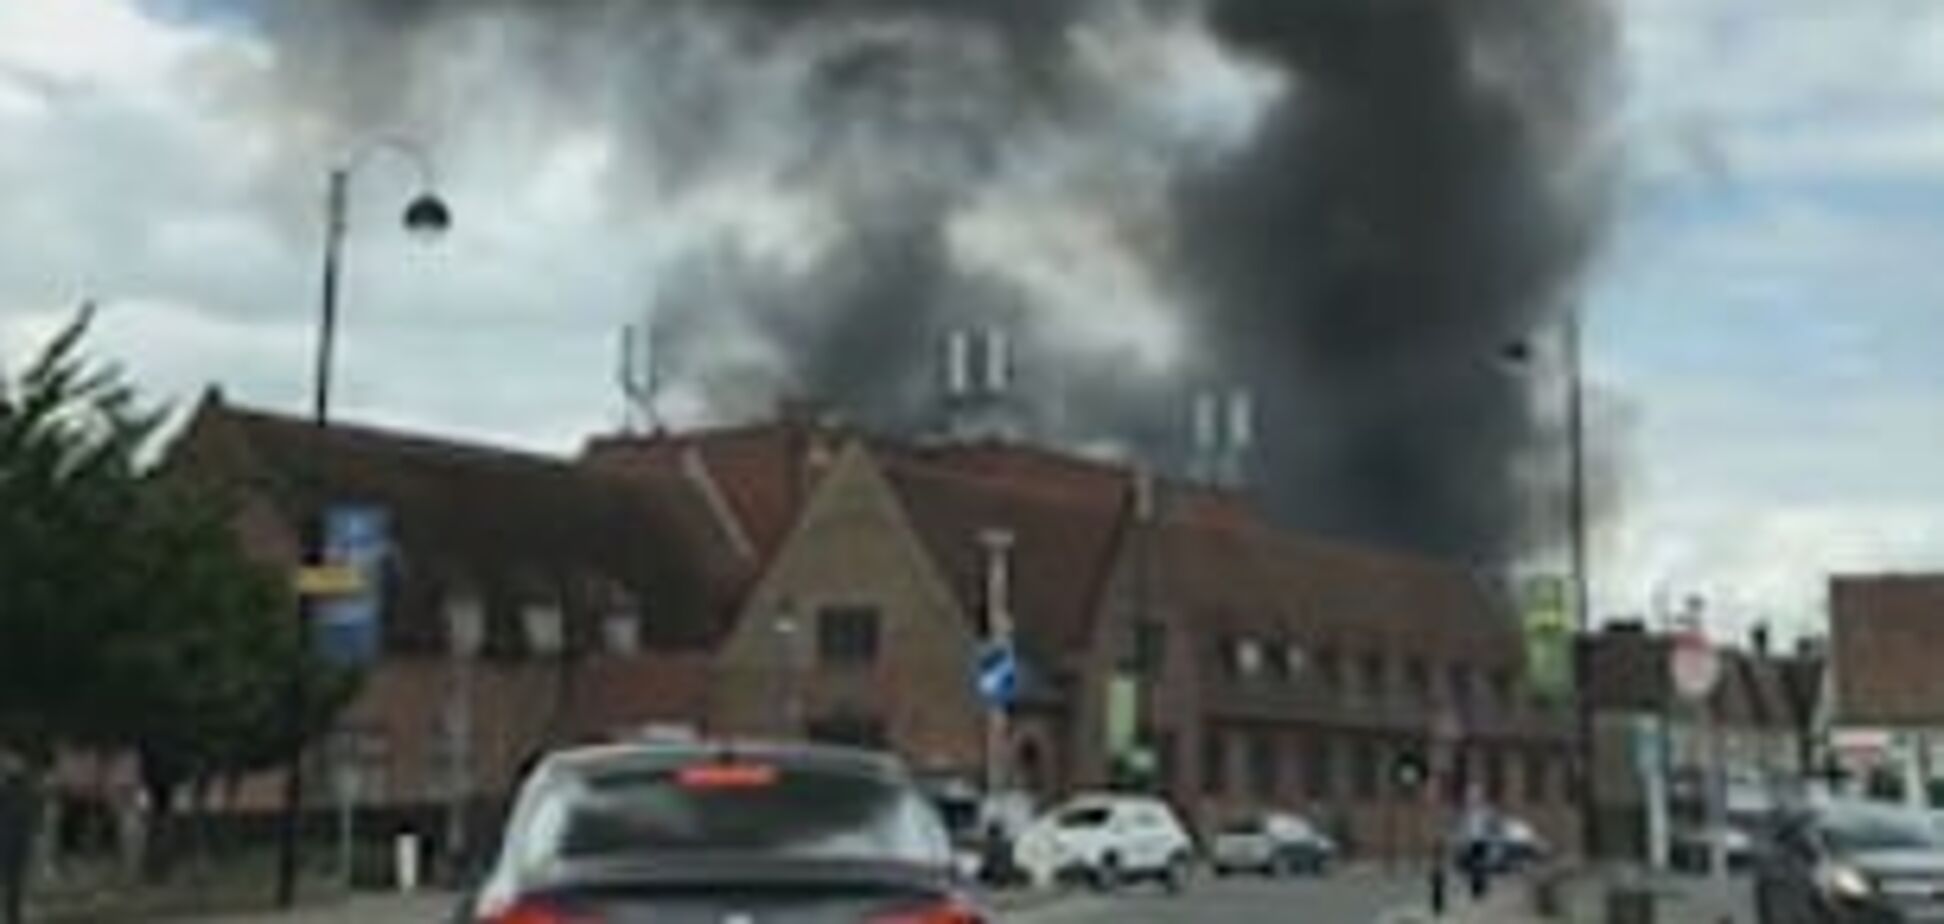 Гриміли вибухи: у Британії спалахнула велика пожежа біля аеропорту. Фото та відео